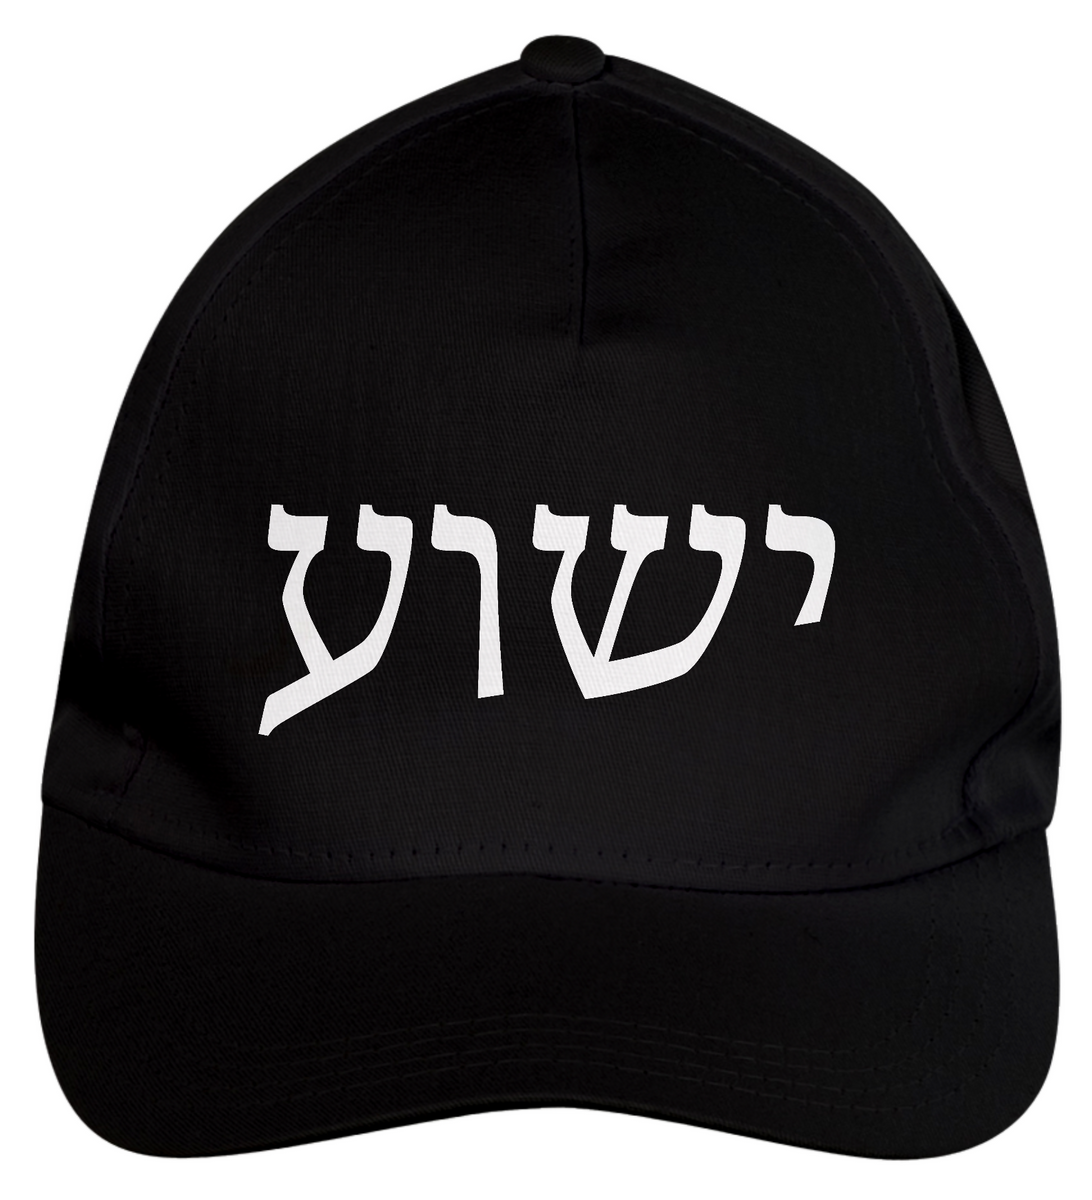 Nome do produto: Boné Yeshua em hebraico